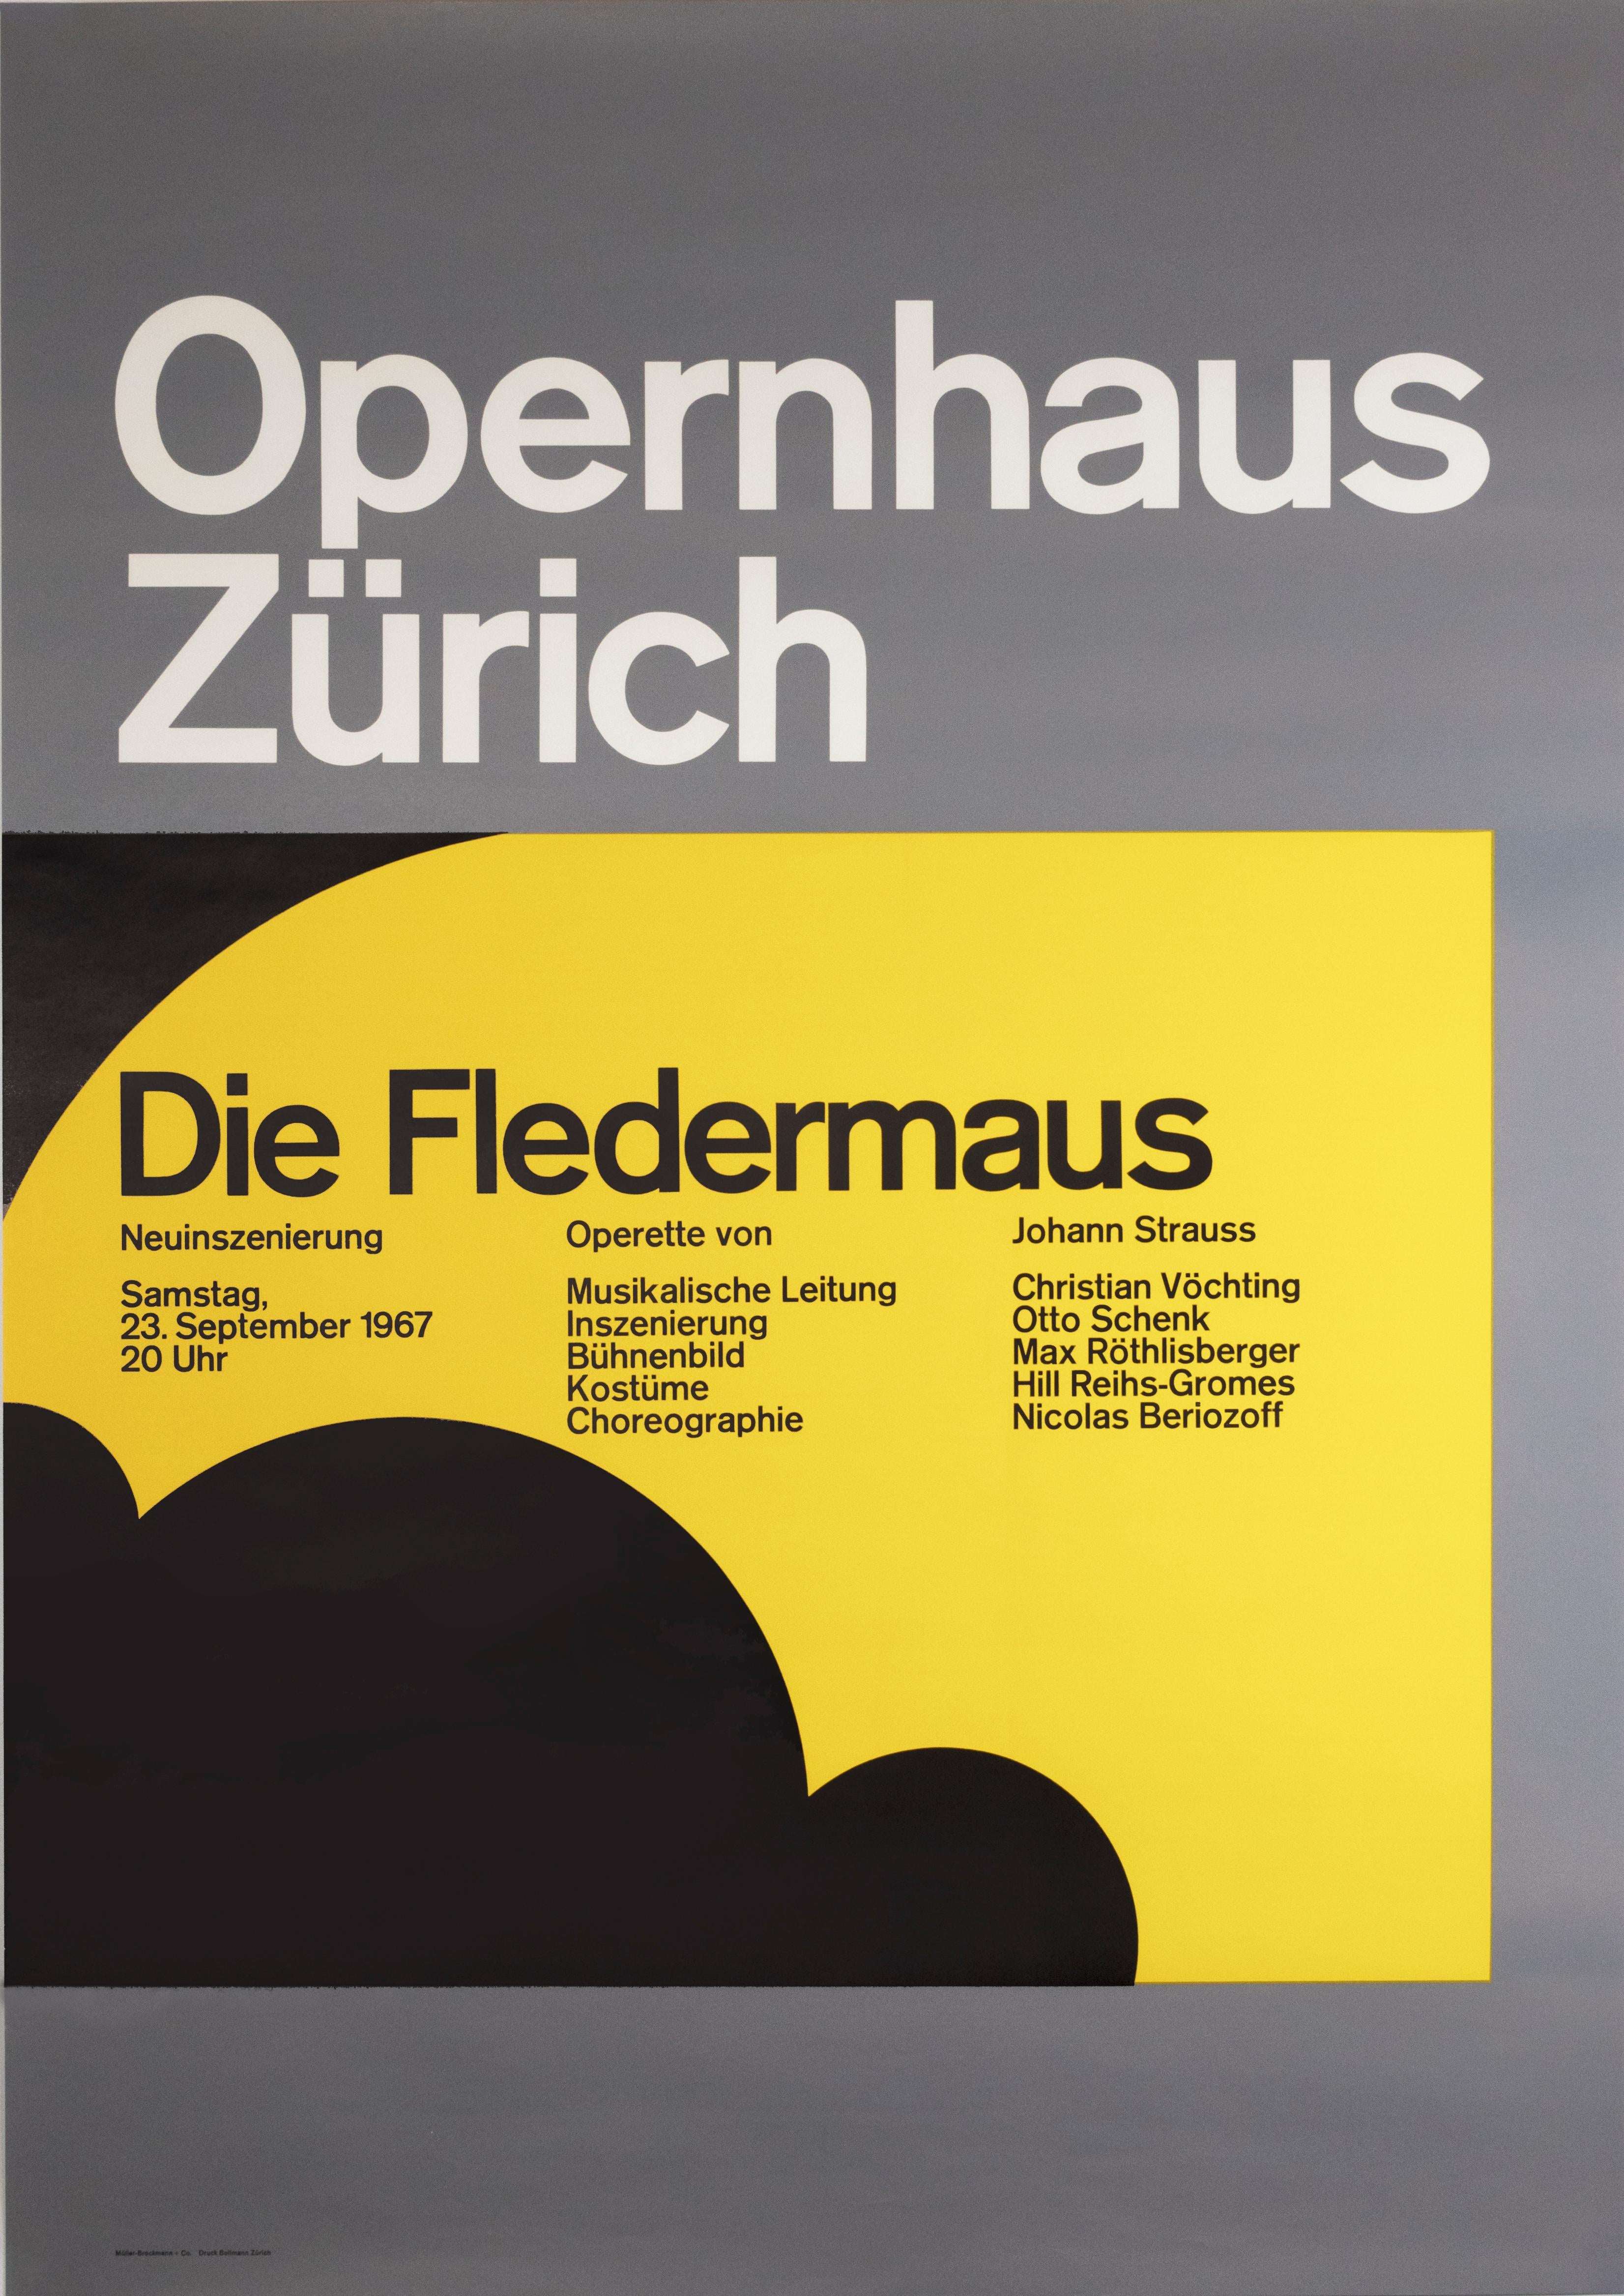 Josef Müller-Brockmann Animal Print - "Opernhaus Zurich -  Die Fledermaus (The Bat)" Opera Original Vintage Poster